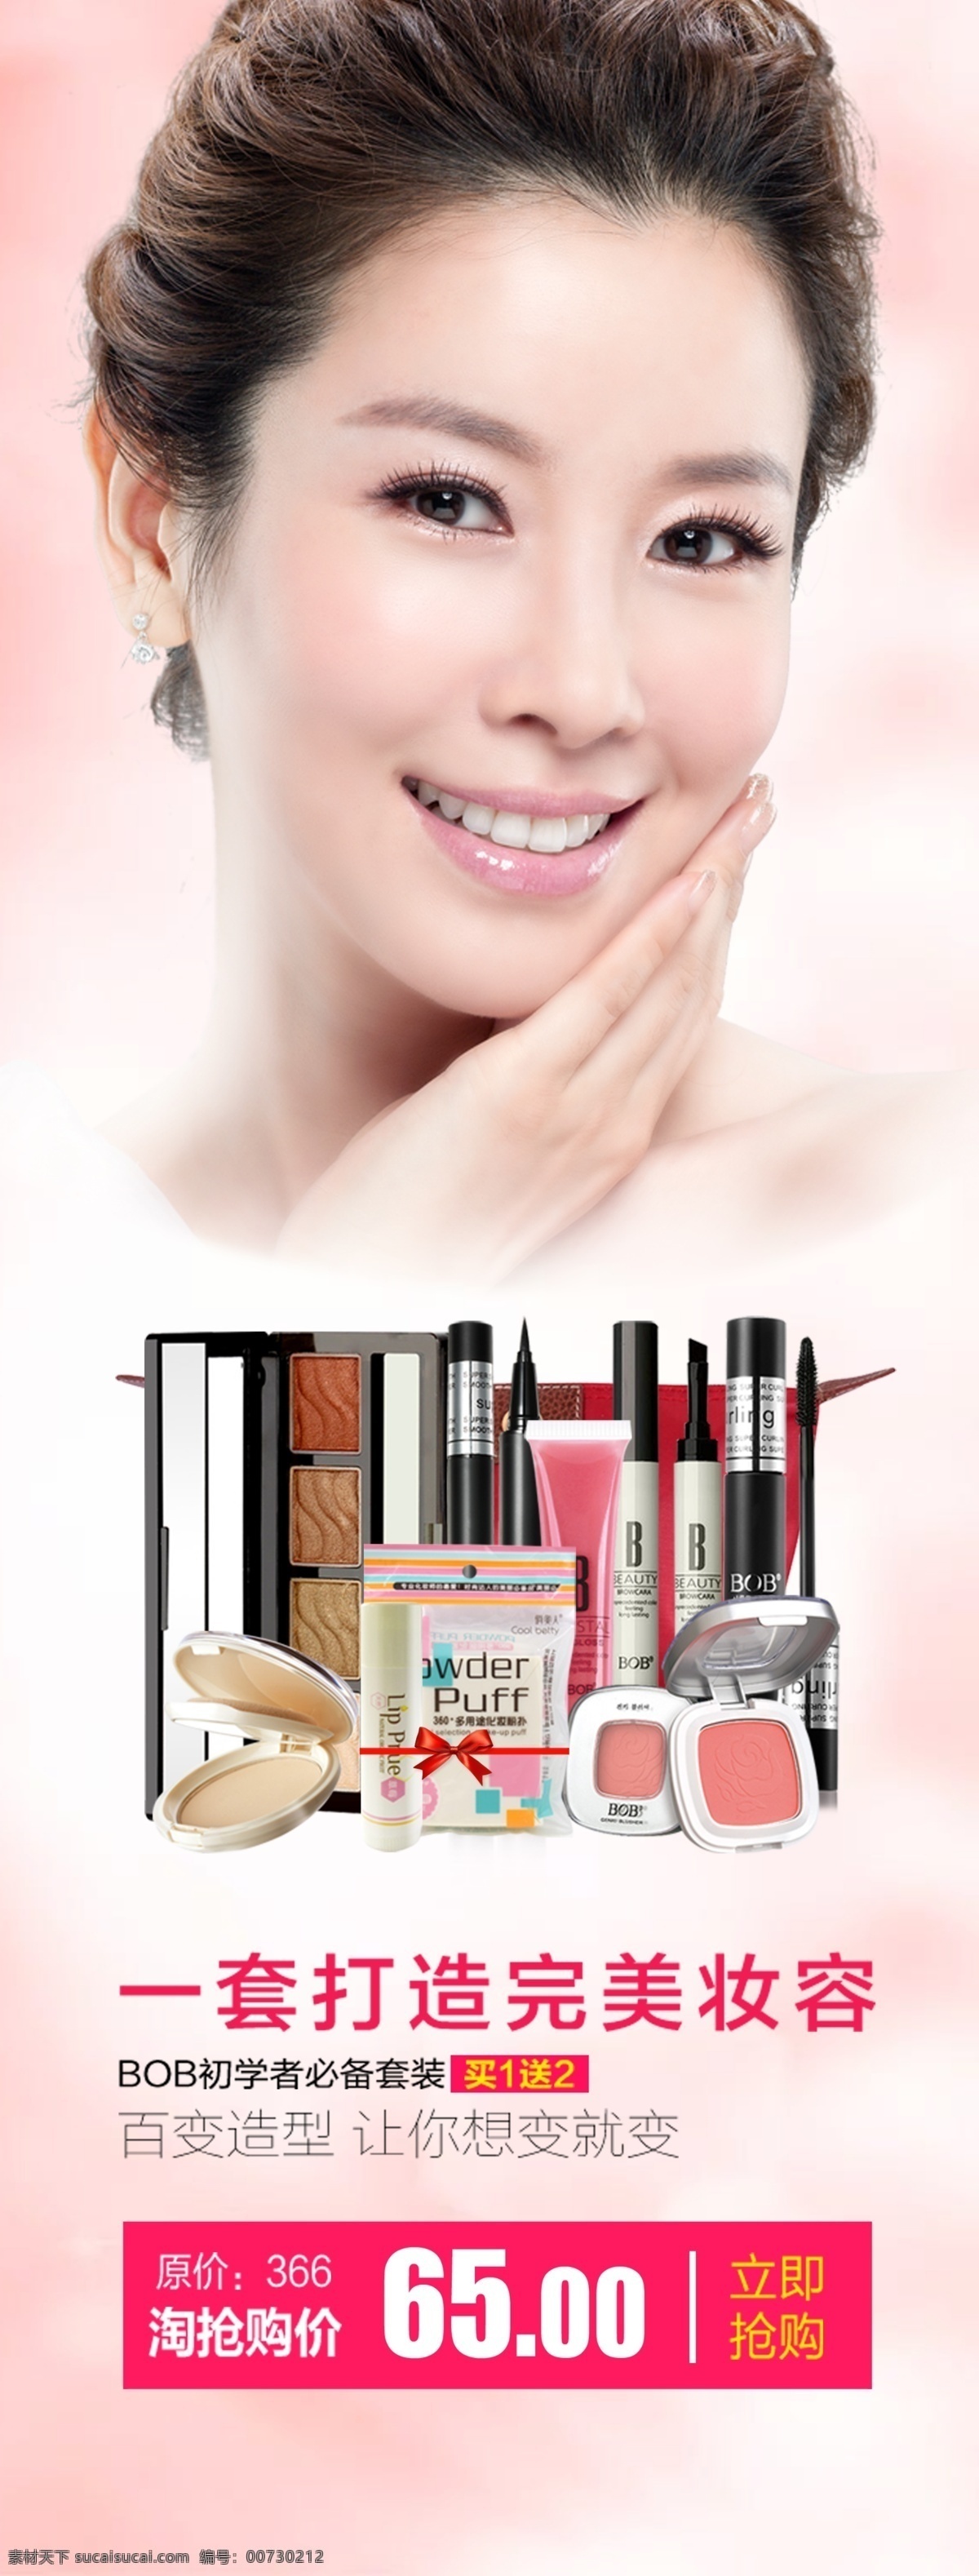 化妆品 广告 特惠 活动 化妆品广告 特惠活动 特惠价 美女